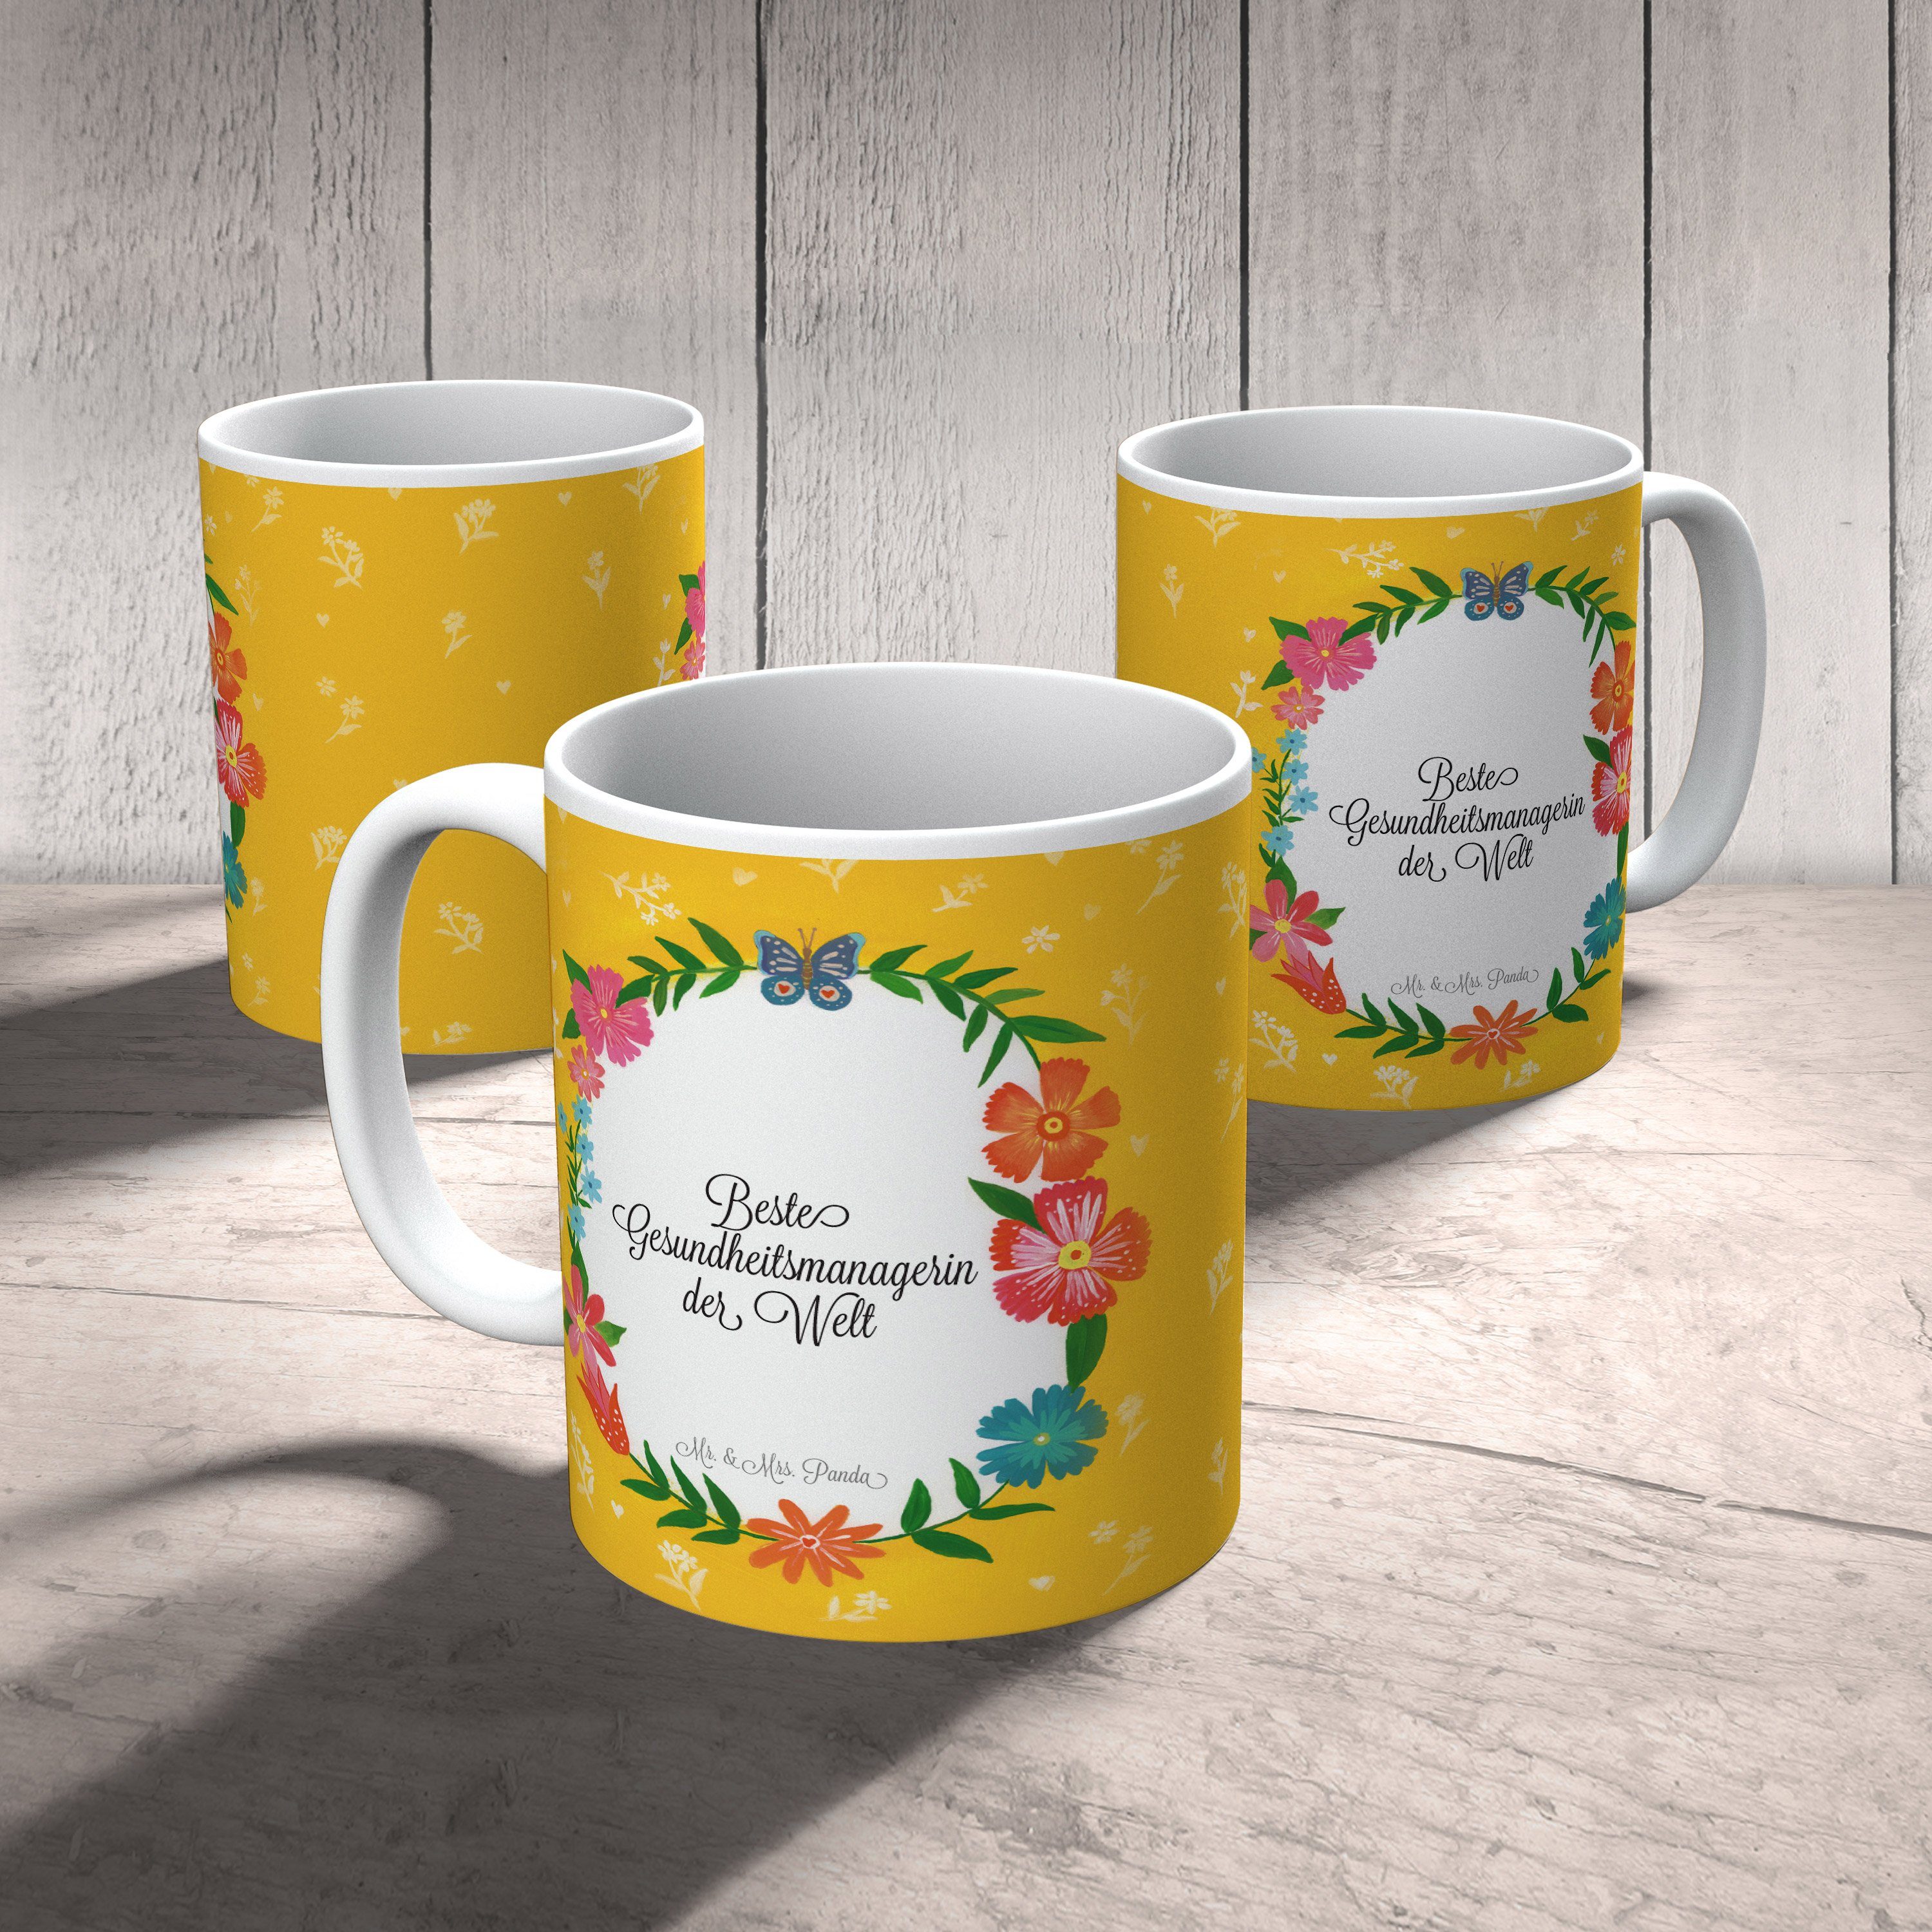 Mr. & Mrs. Panda Porzellantasse, Kaffeebecher, Gesundheitsmanagerin Rente, - Tasse Keramik Geschenk